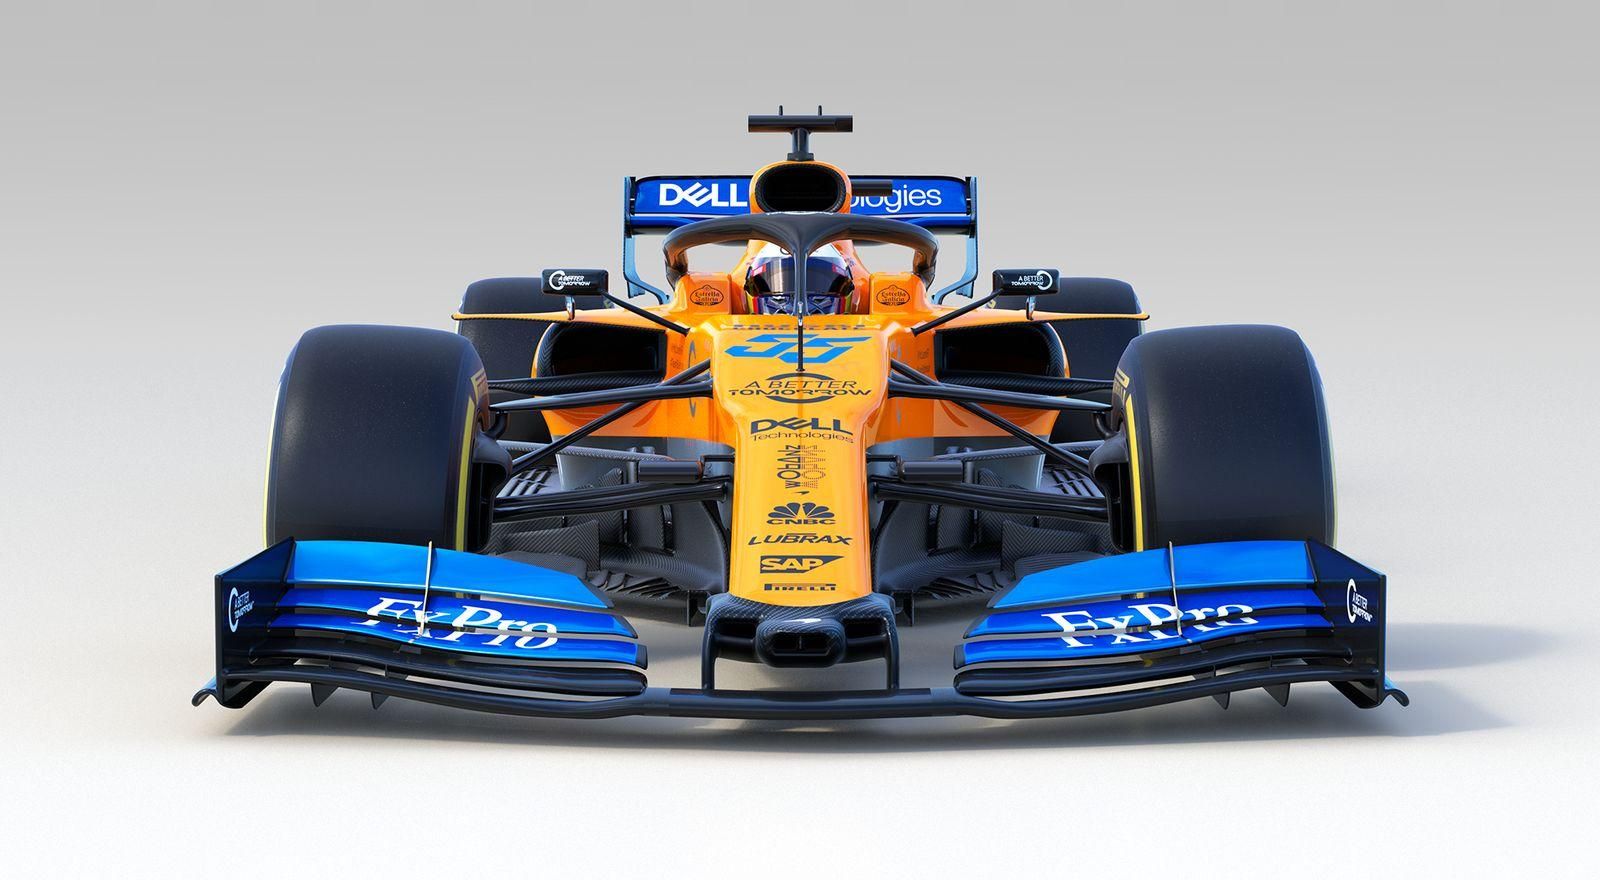 McLaren представили новый болид и пилотов: фото